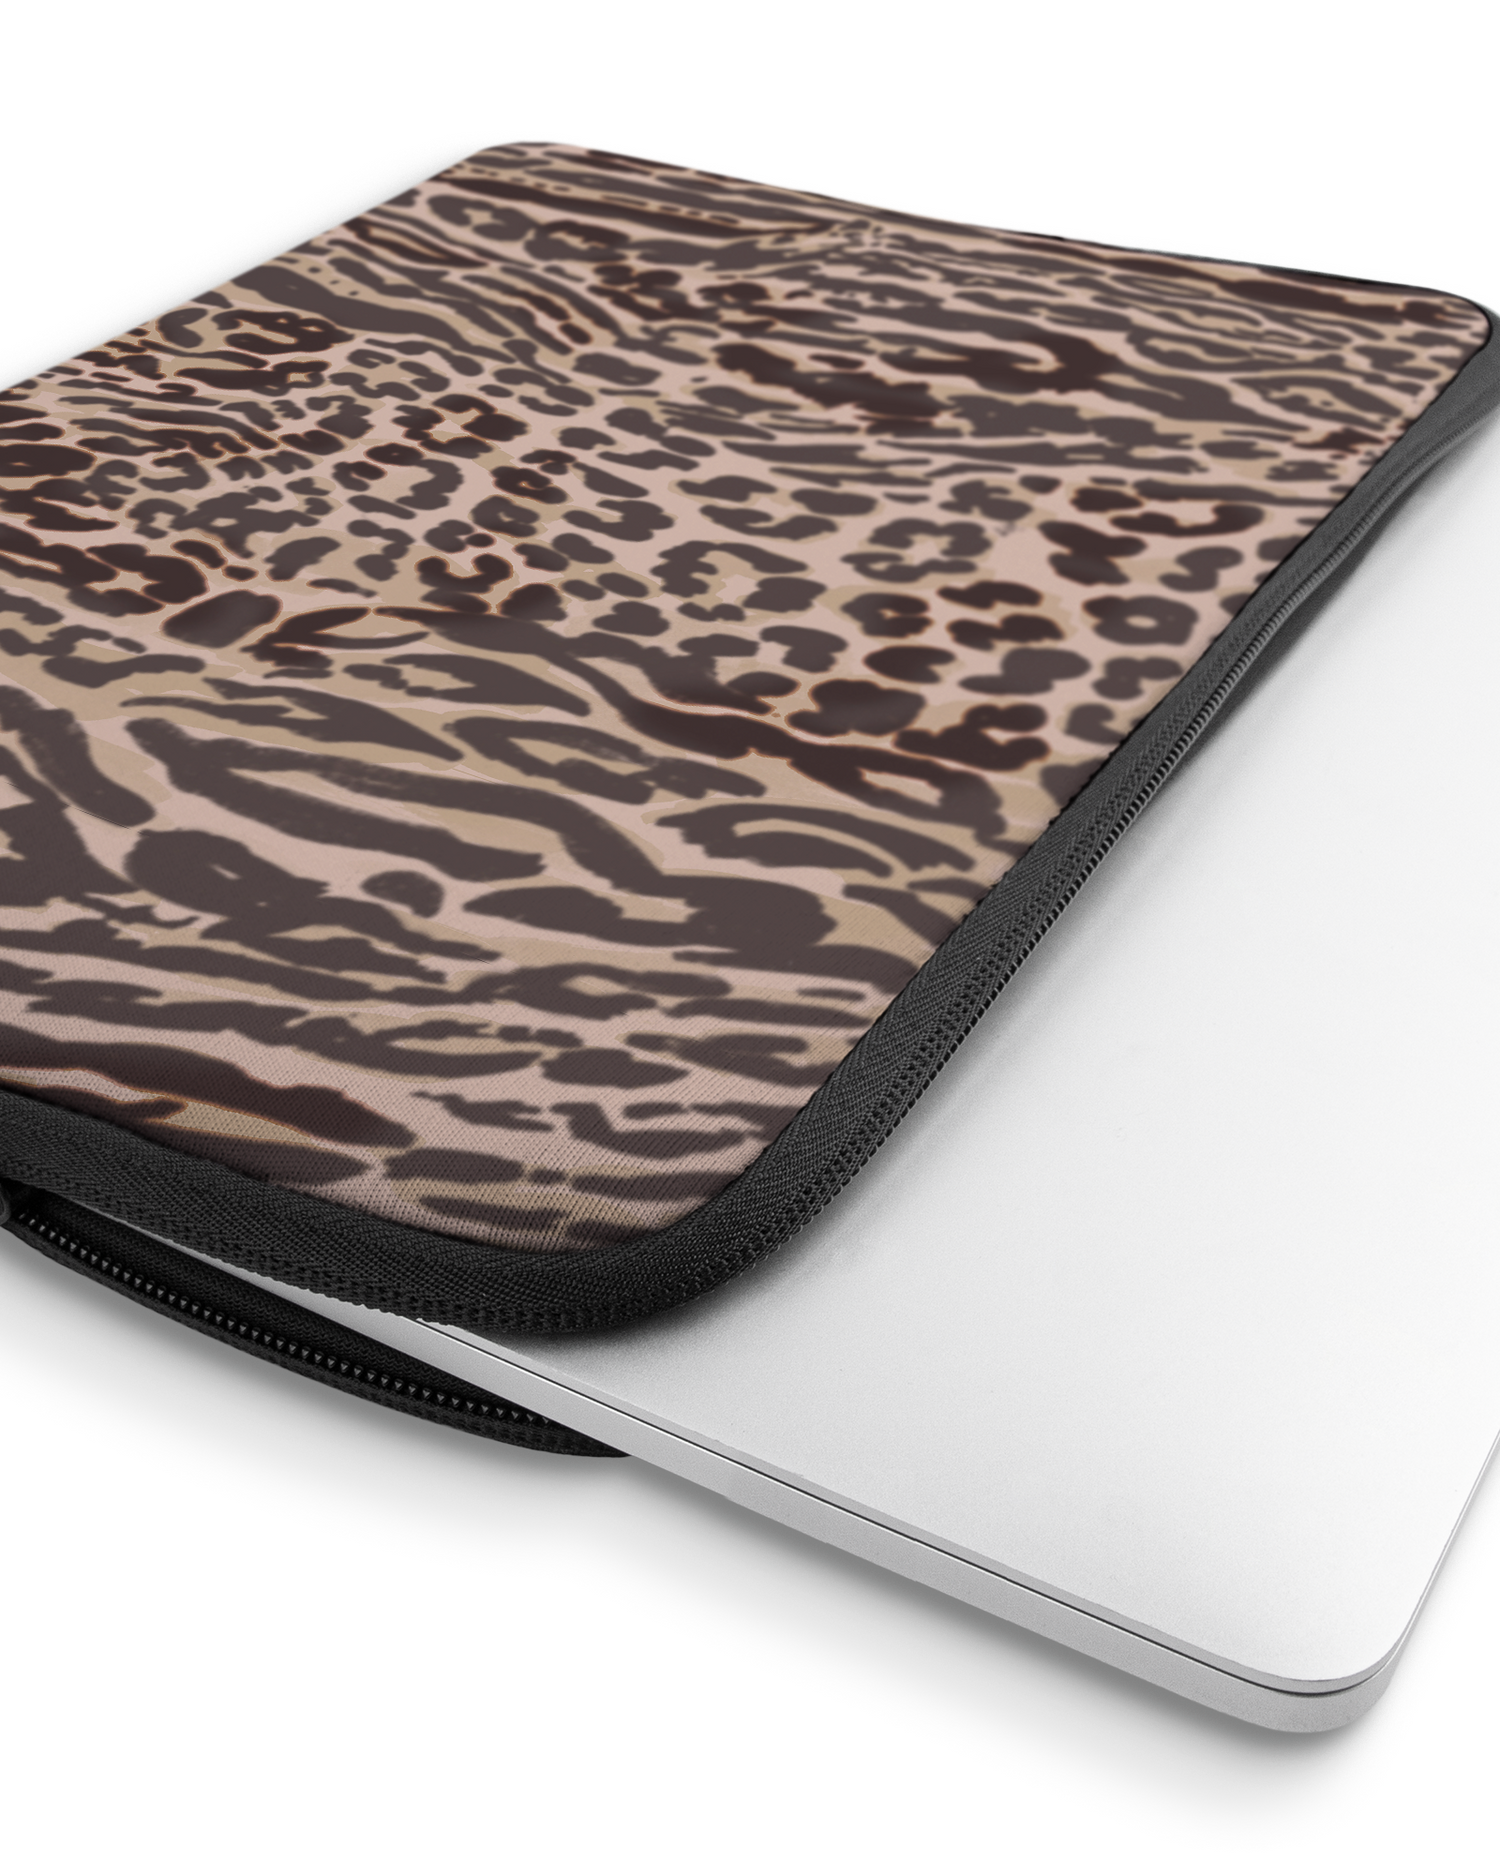 Animal Skin Tough Love Laptophülle 16 Zoll mit Gerät im Inneren